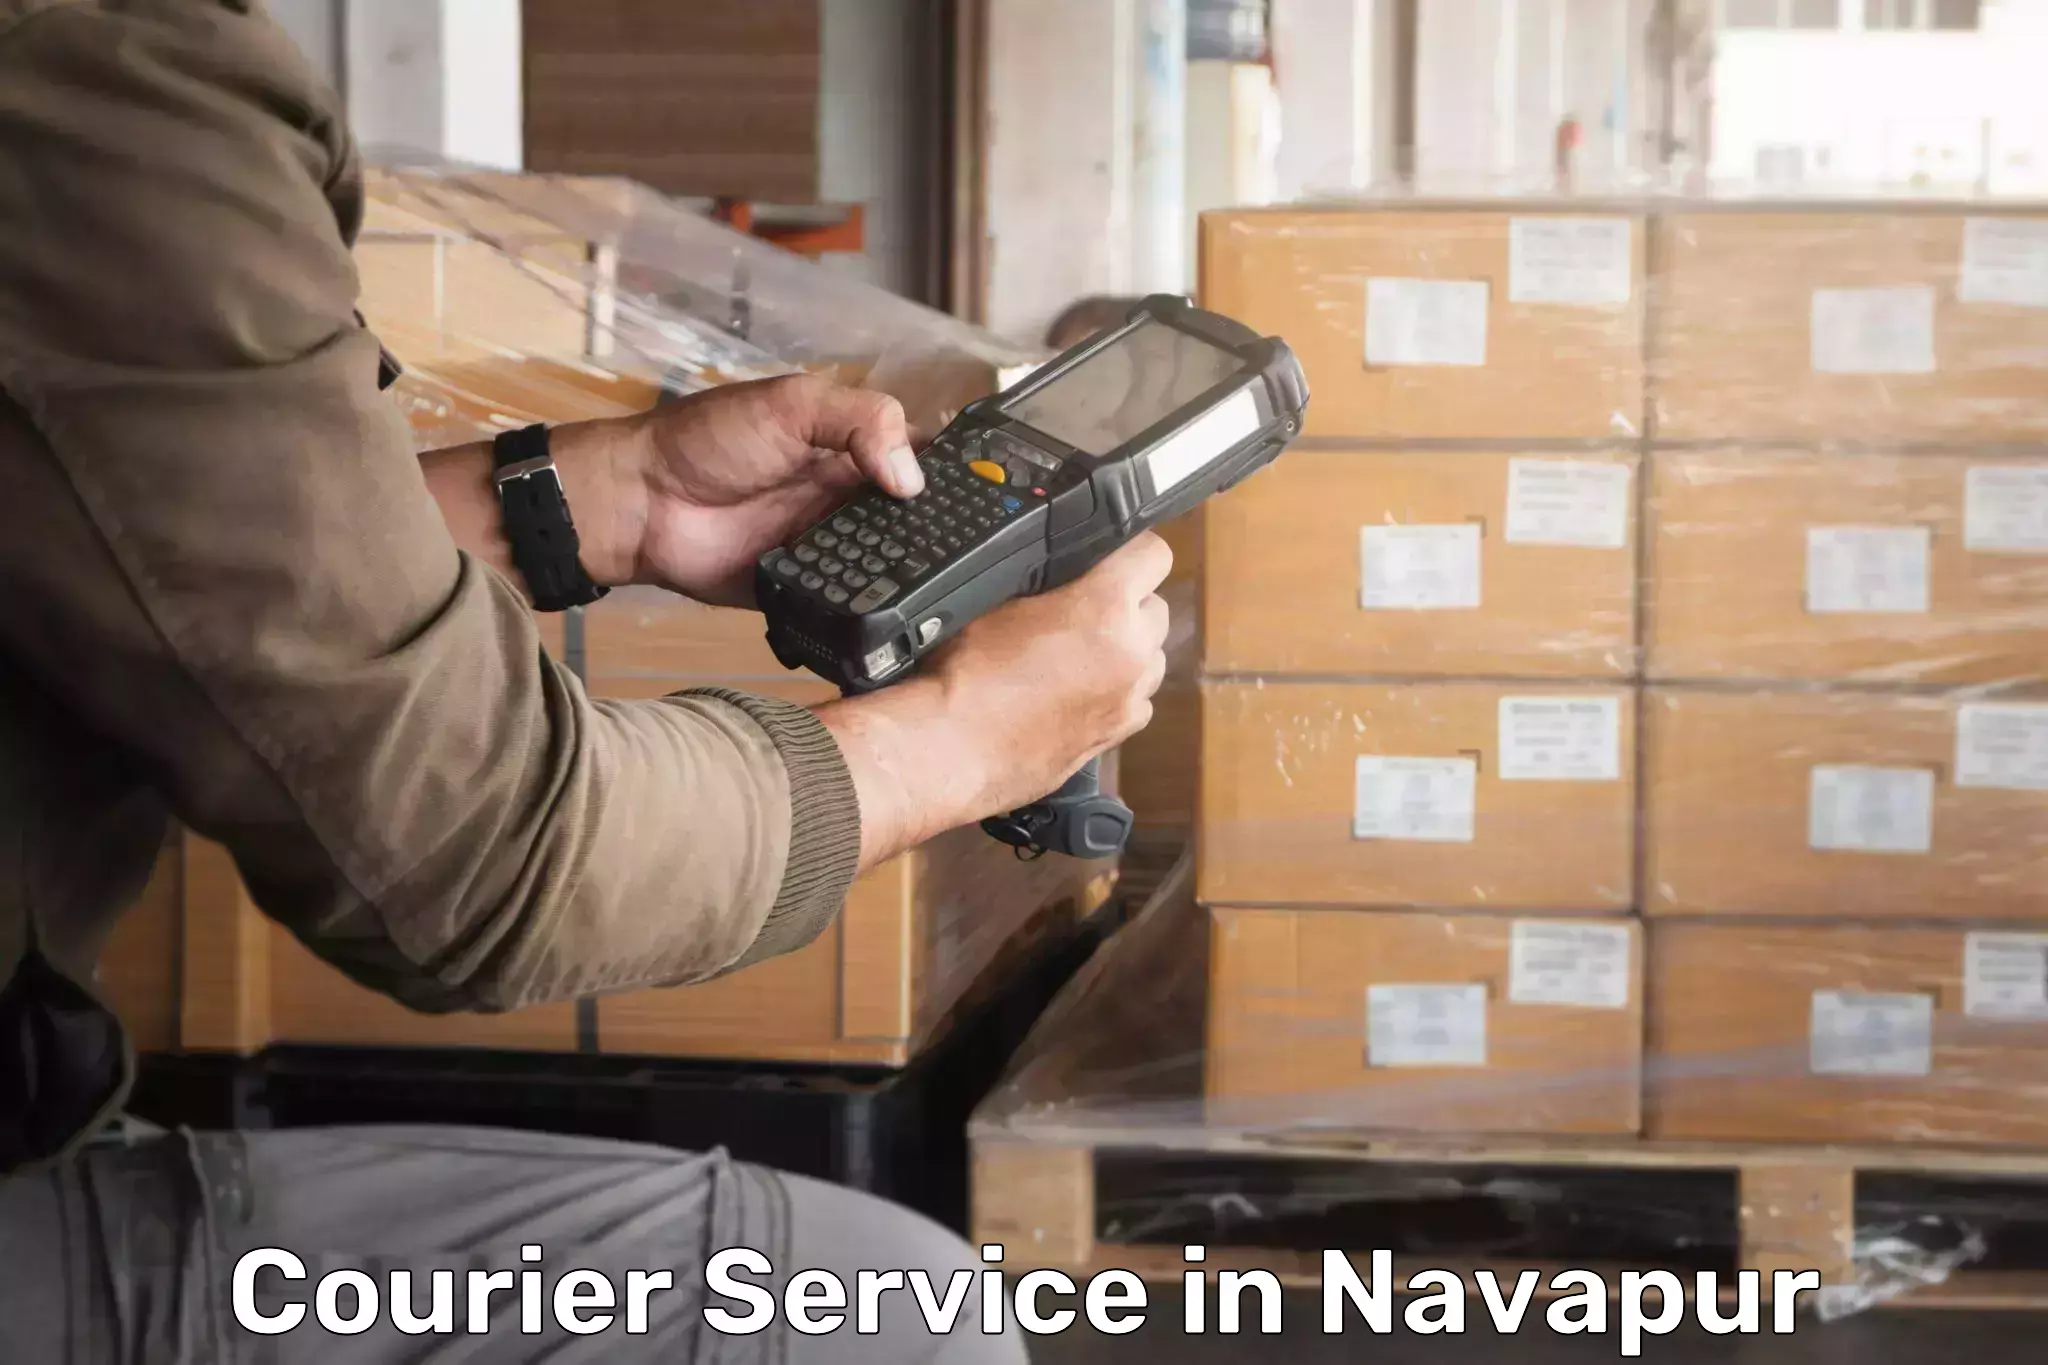 Easy return solutions in Navapur